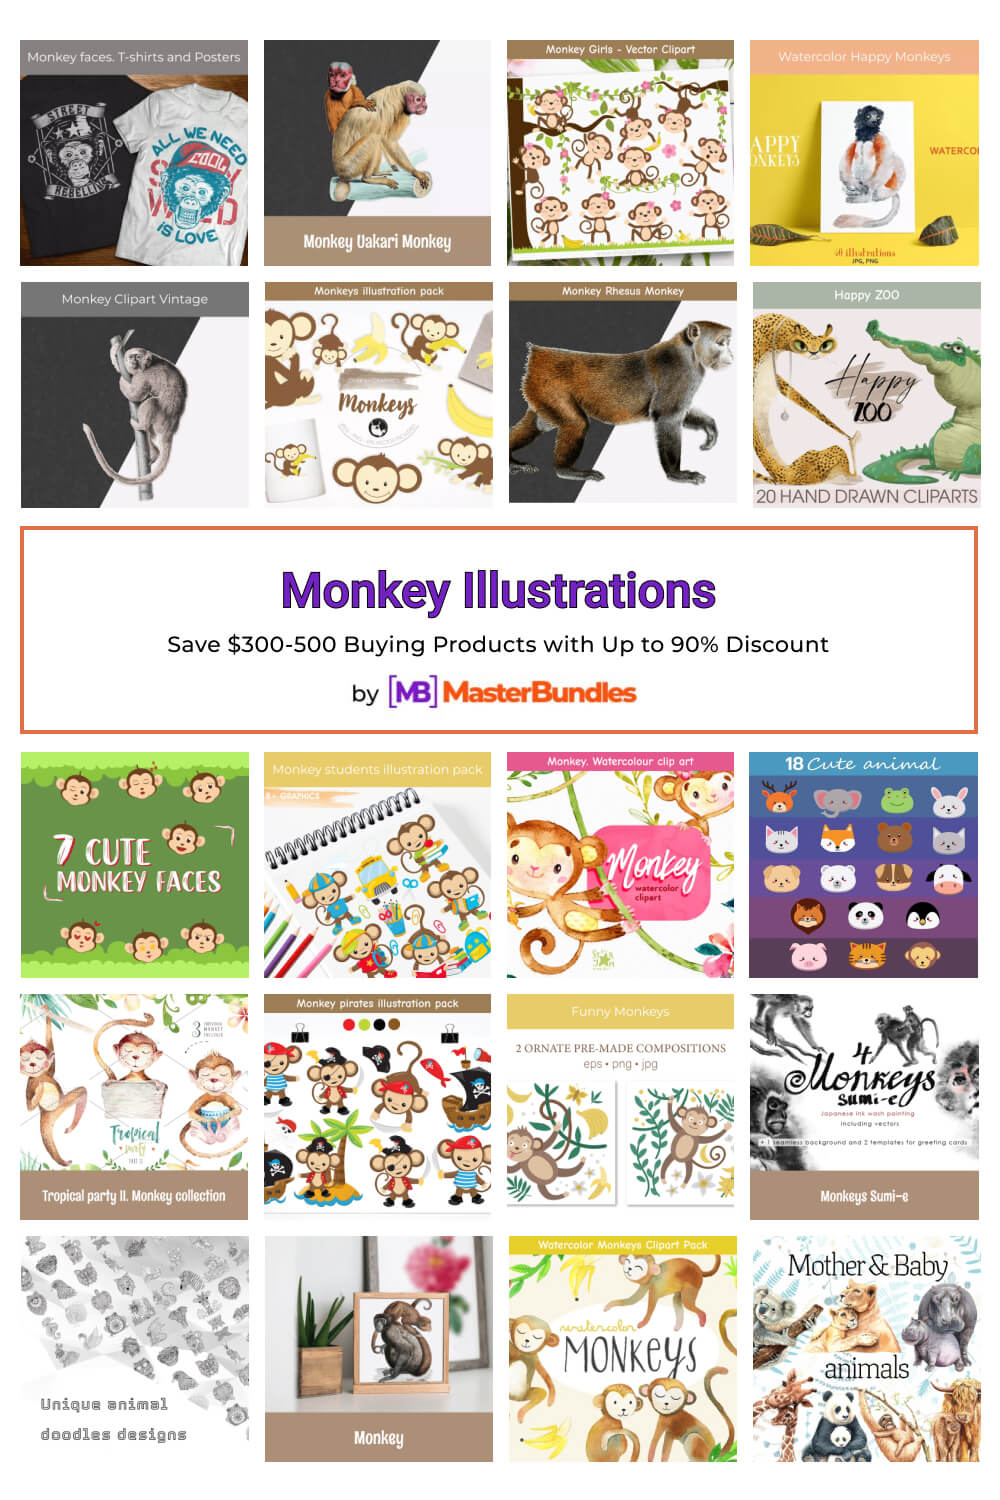 monkey illustrations pinterest image.